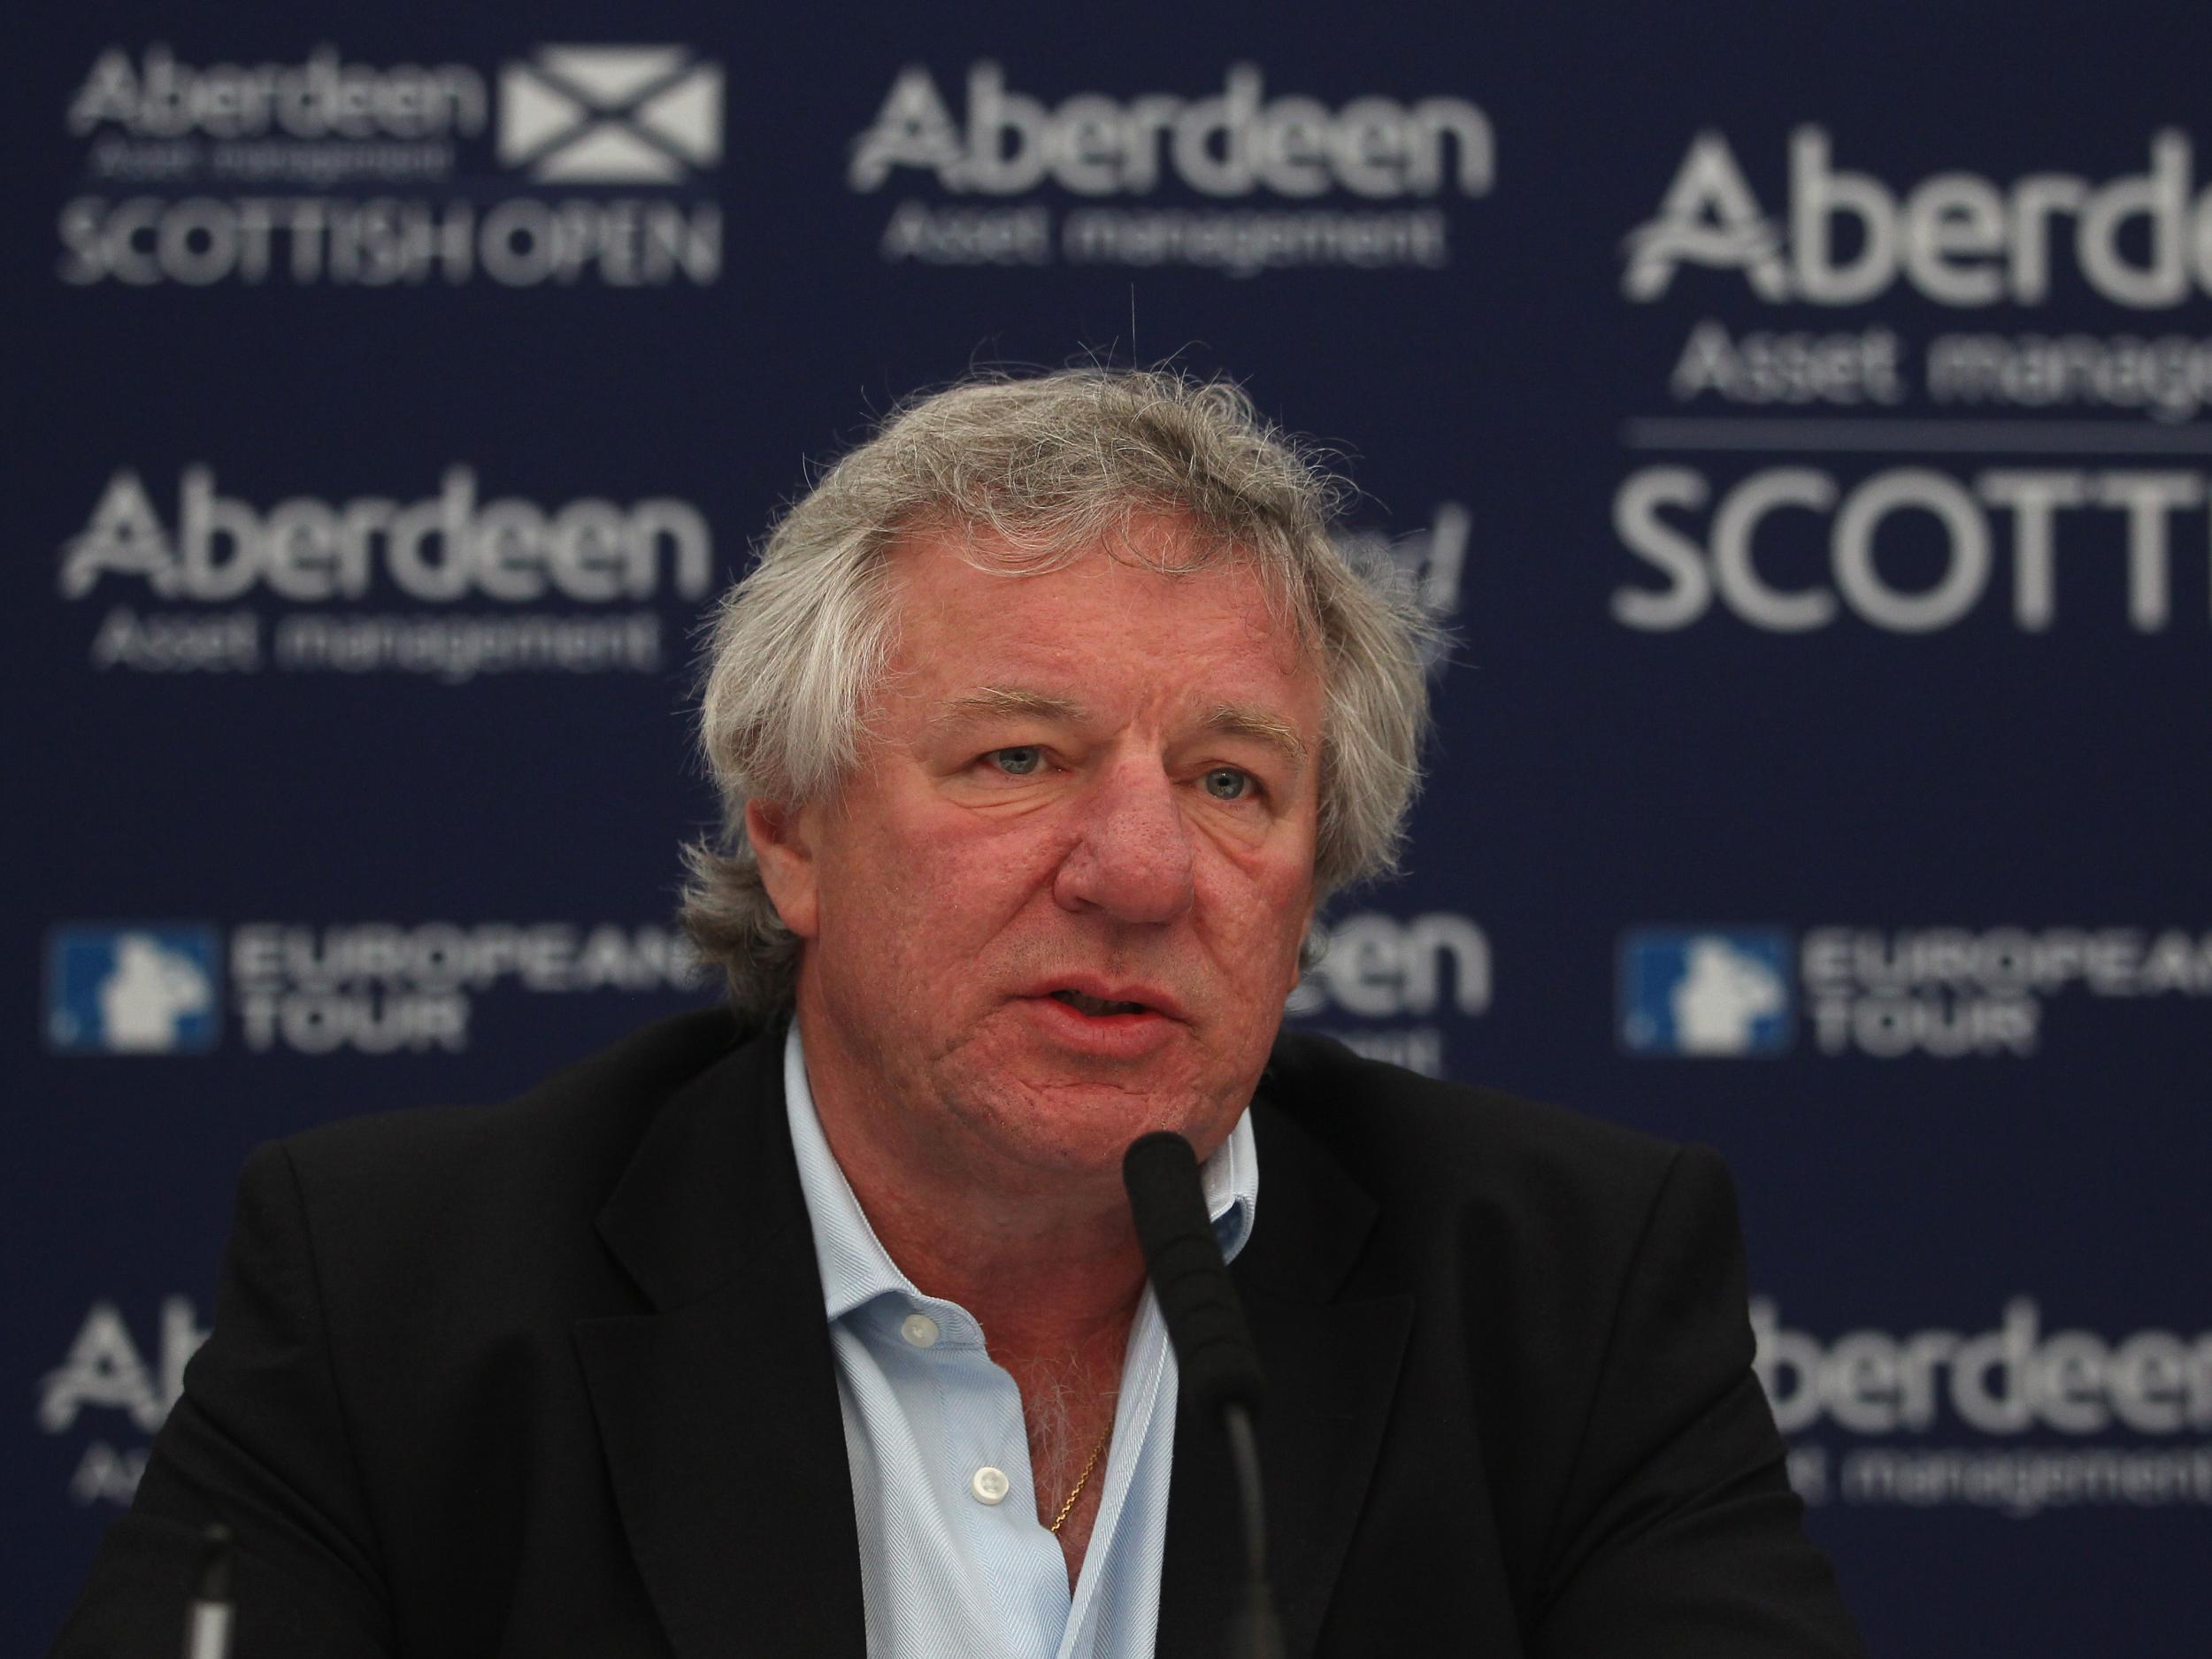 Martin Gilbert, Chief Executive of Aberdeen Asset Management